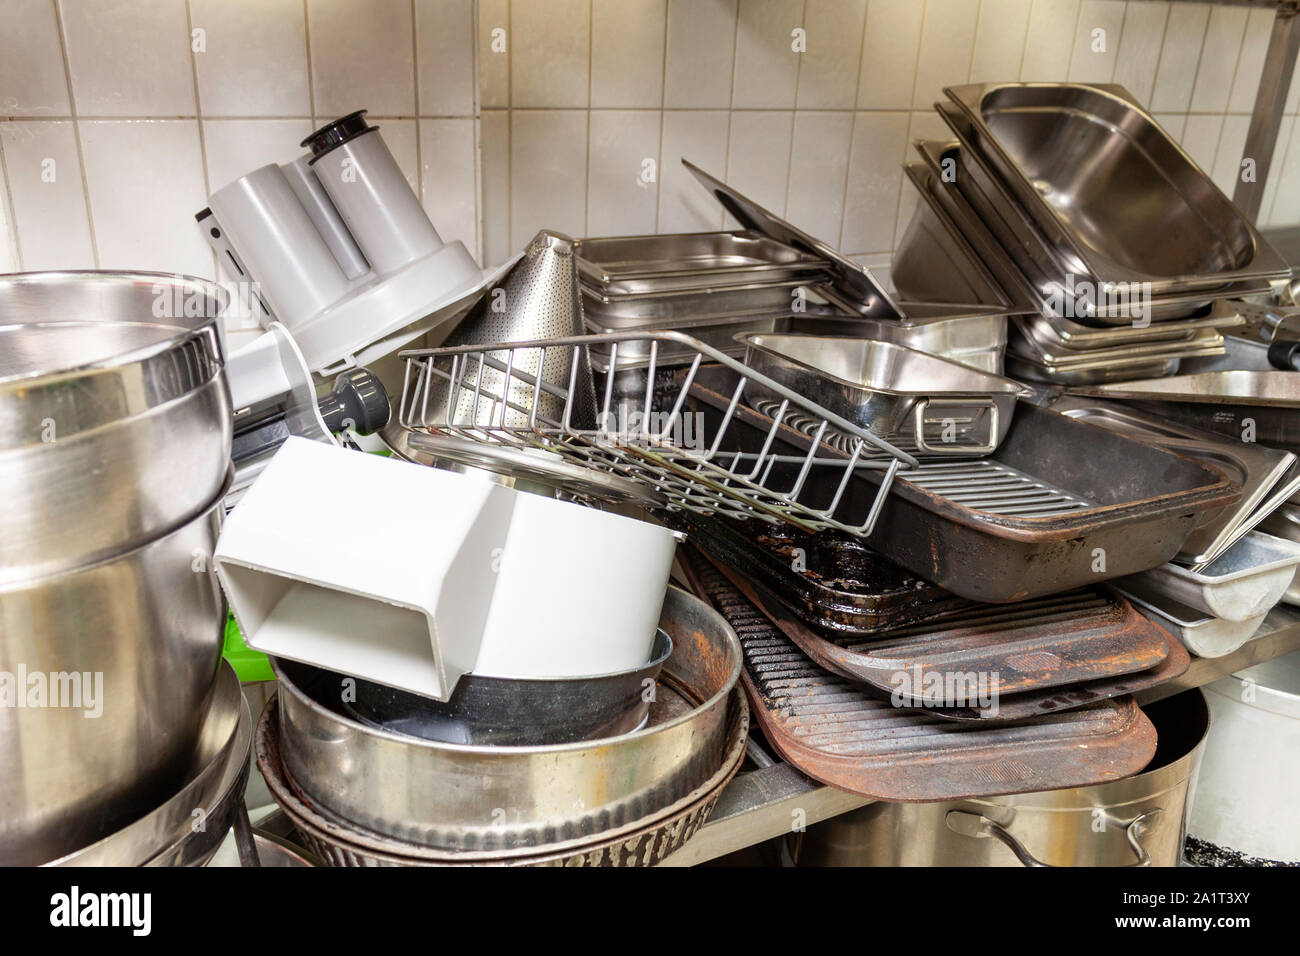 Pile de vieilles plaques de cuisson et le réchauffement des pots dans une cuisine industrielle Banque D'Images